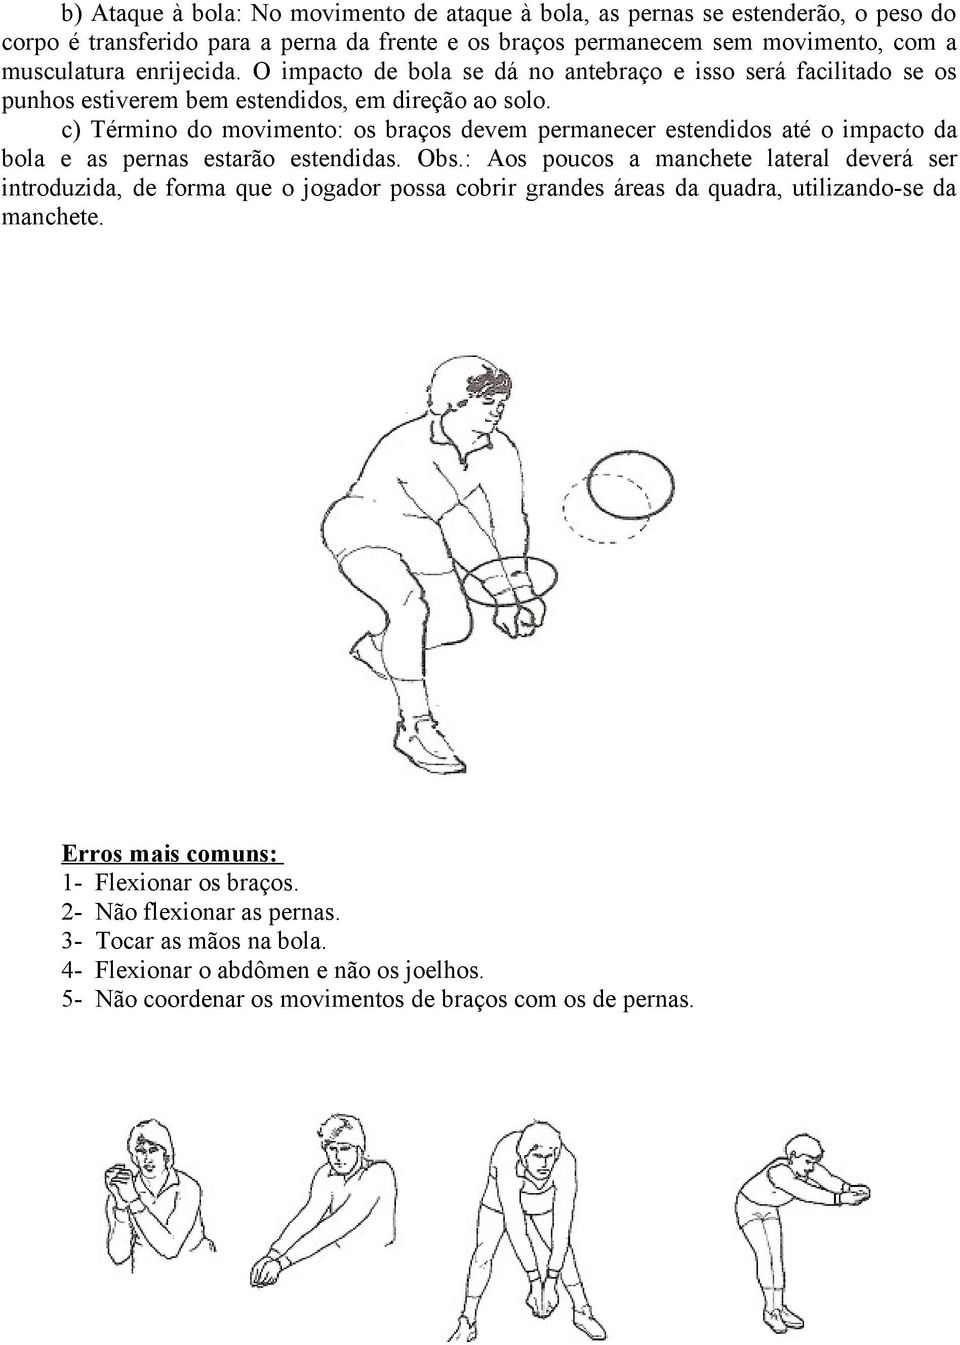 c) Término do movimento: os braços devem permanecer estendidos até o impacto da bola e as pernas estarão estendidas. Obs.